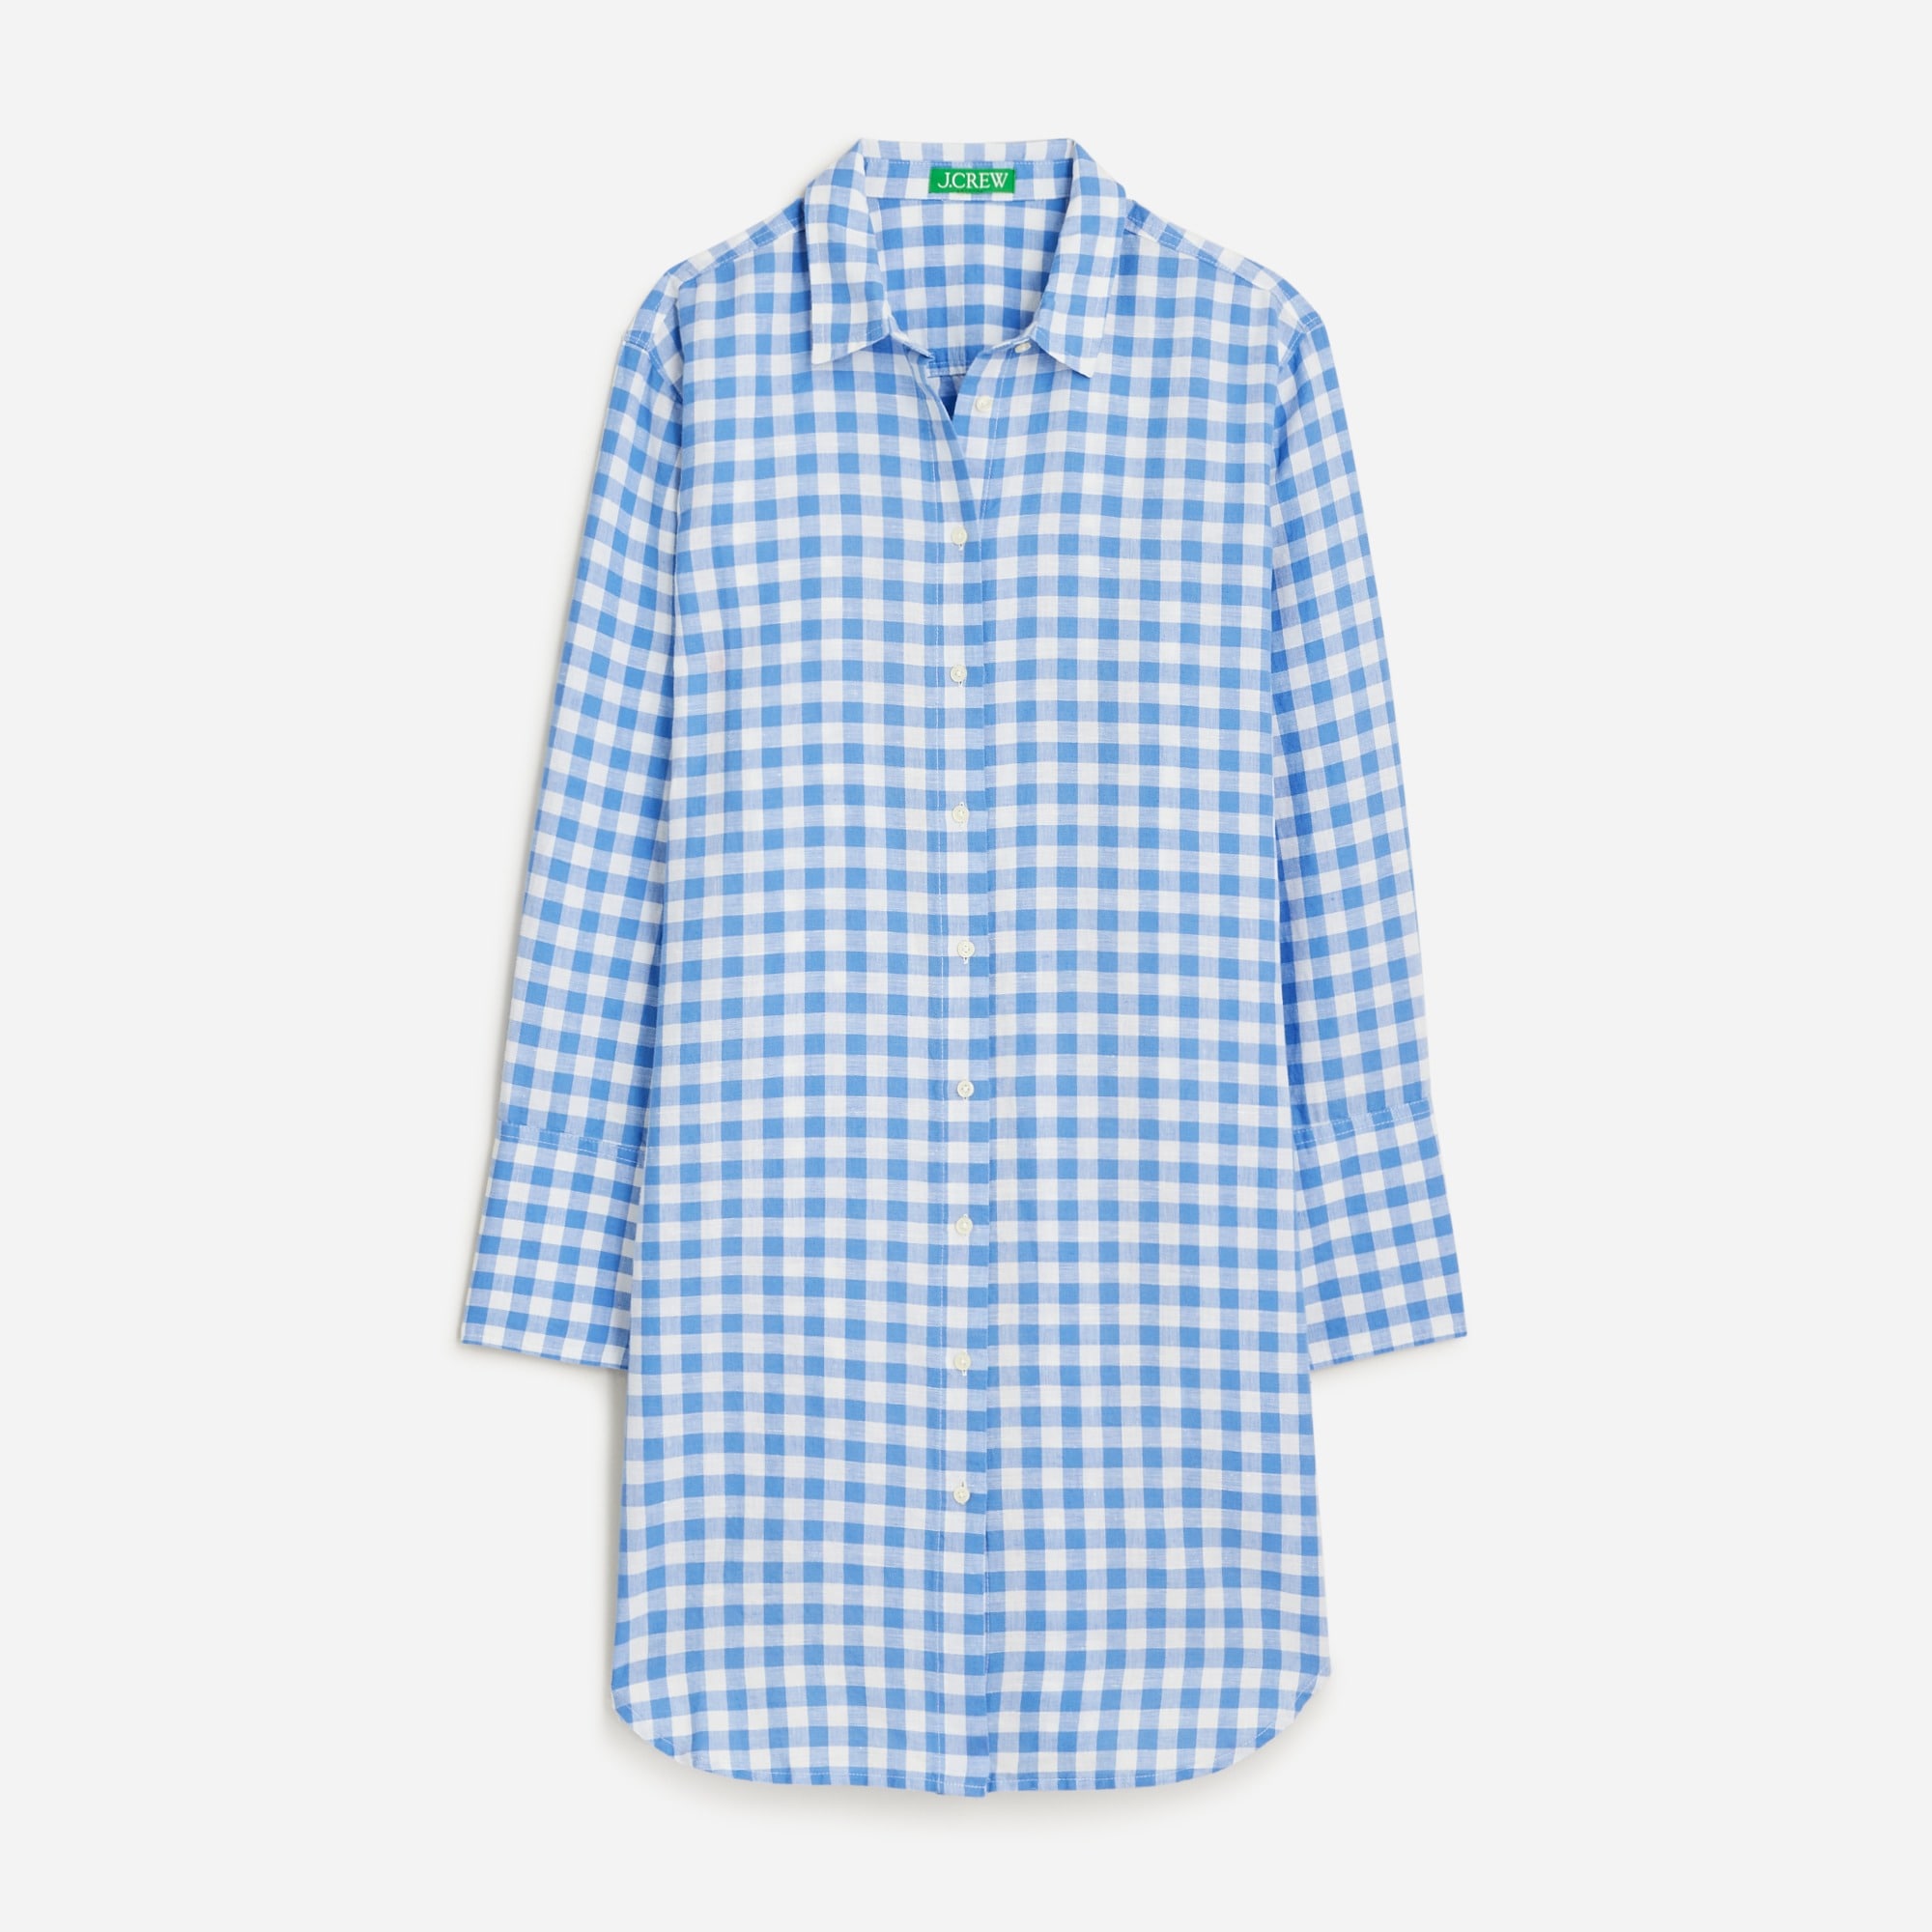  Linen-cotton blend beach shirt in gingham